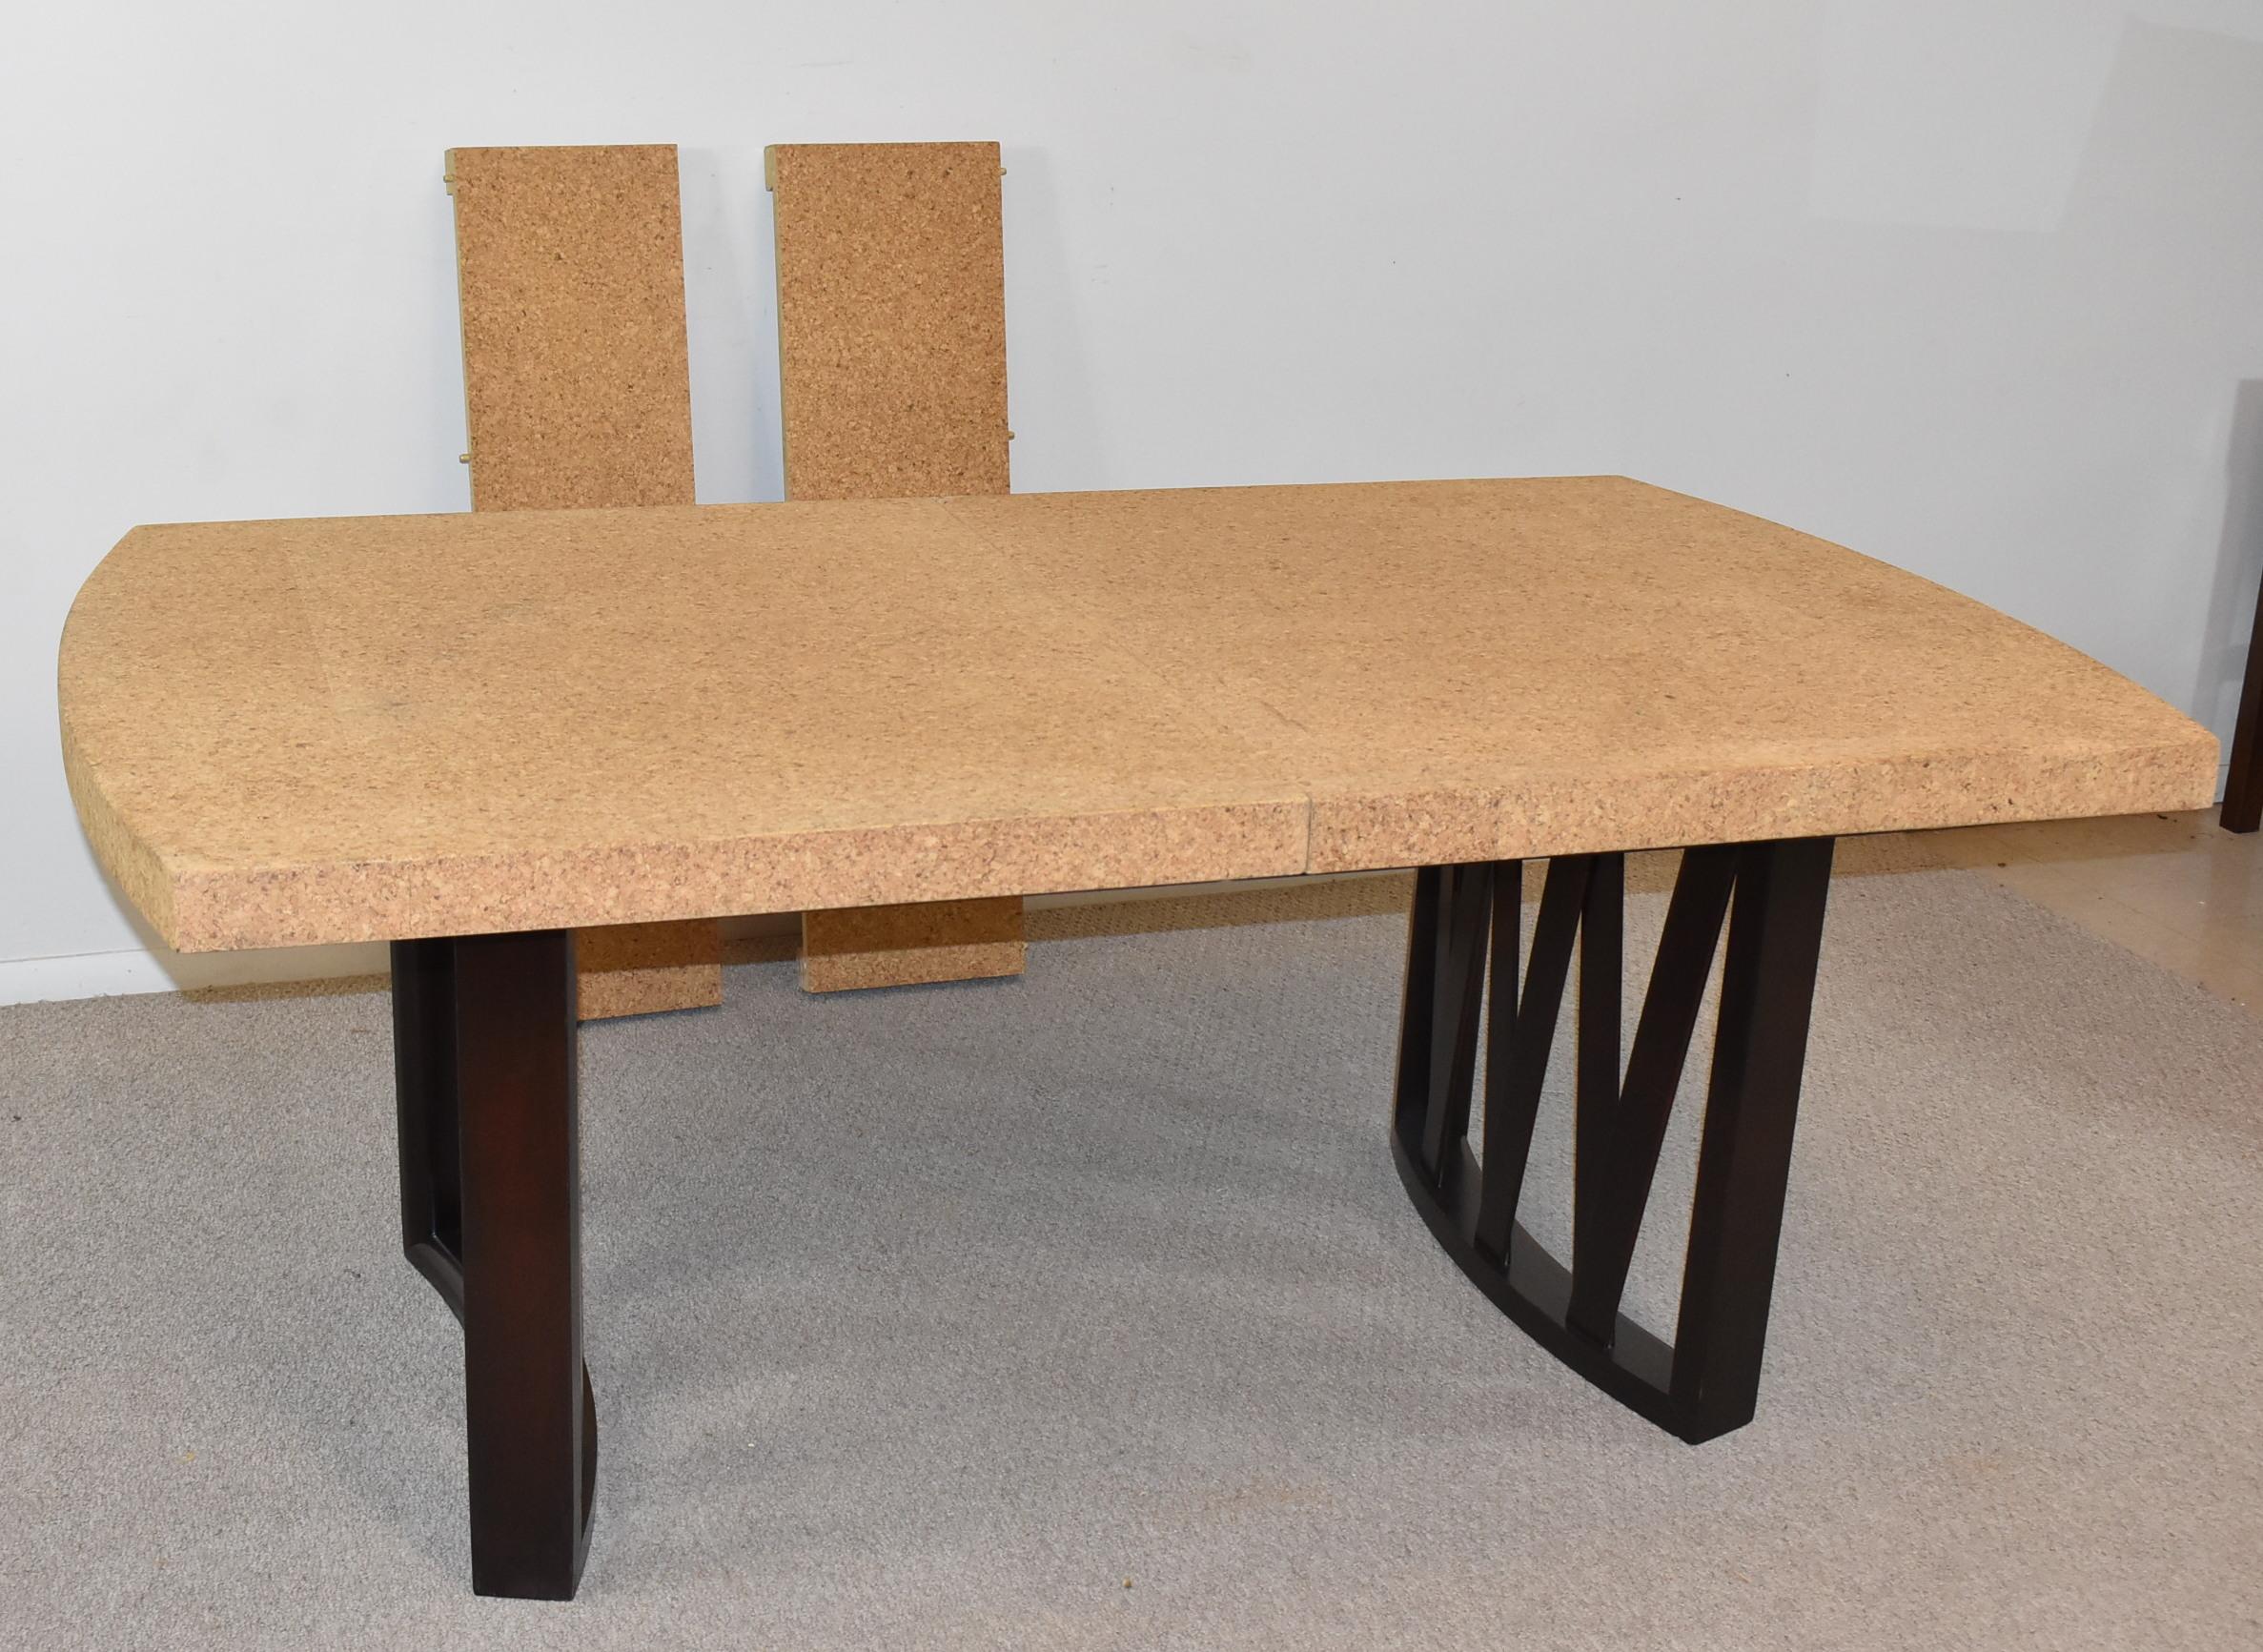 Cette table de salle à manger à plateau en liège a été conçue par Paul Frankl pour Johnson Furniture Company. Le plateau est en liège naturel et les pieds de soutien en noyer sont incurvés. Les pieds ont une finition ébonisée avec des lattes